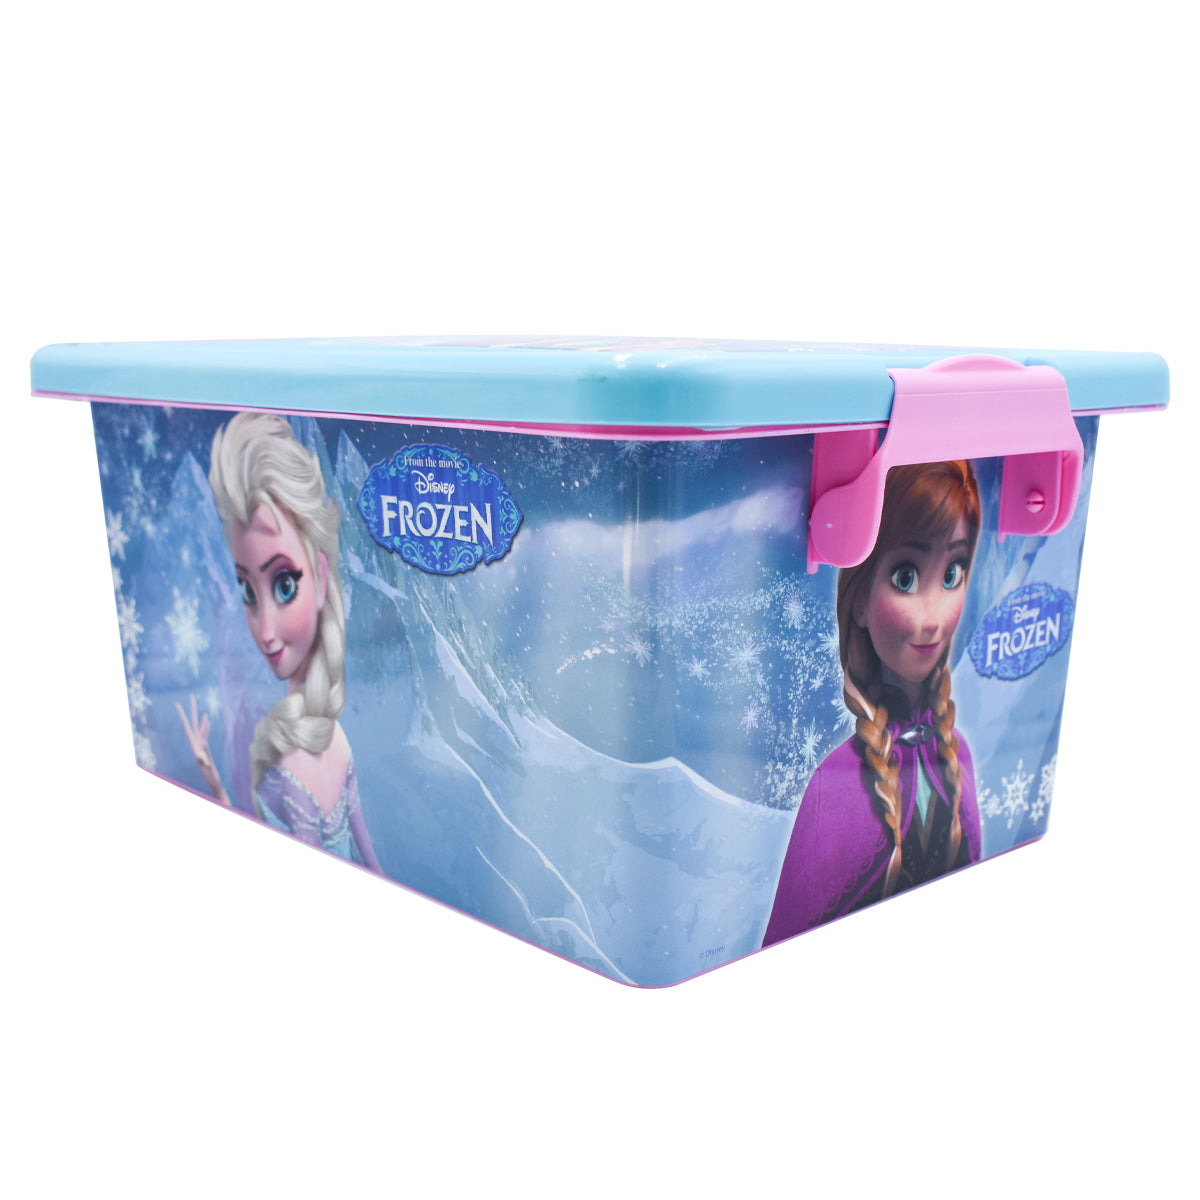 Contenedor Baul Jueguetero Fun Kids Organizador Frozen Disney Plastico 7l